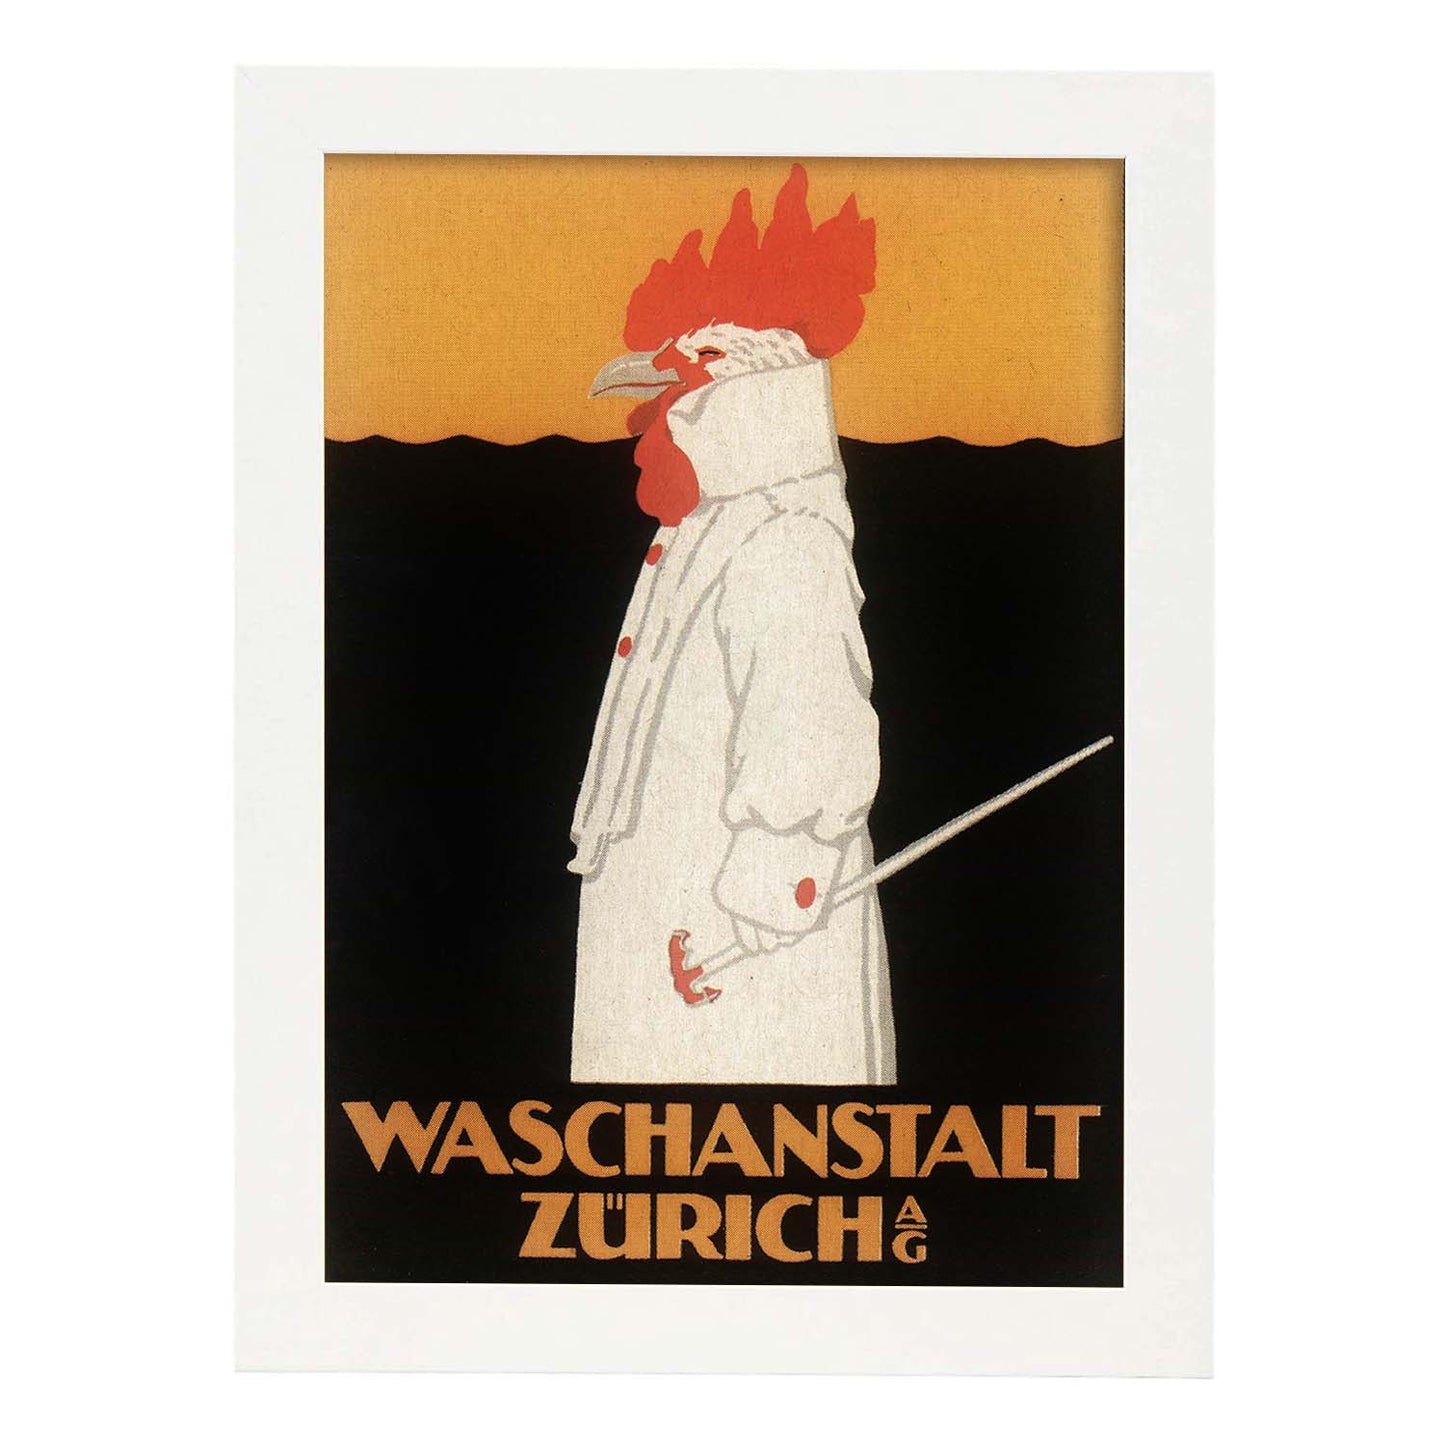 Poster vintage. Anuncio vintage Waschanstalt Zurich de 1905.-Artwork-Nacnic-A3-Marco Blanco-Nacnic Estudio SL